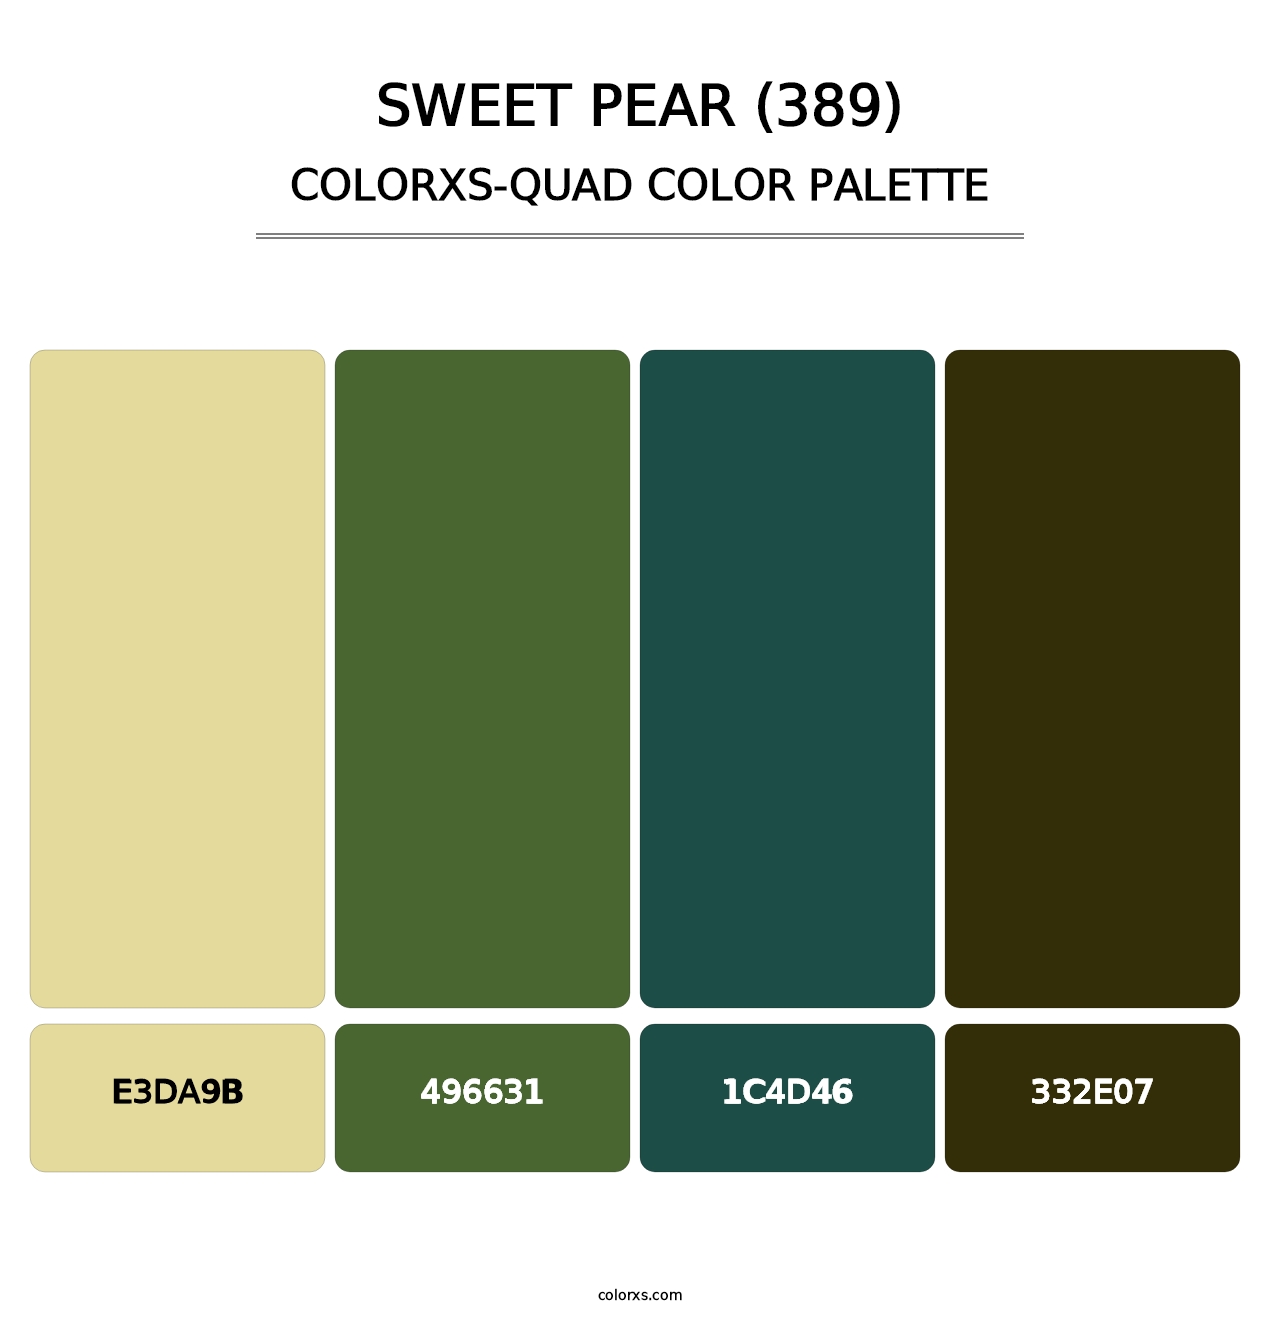 Sweet Pear (389) - Colorxs Quad Palette